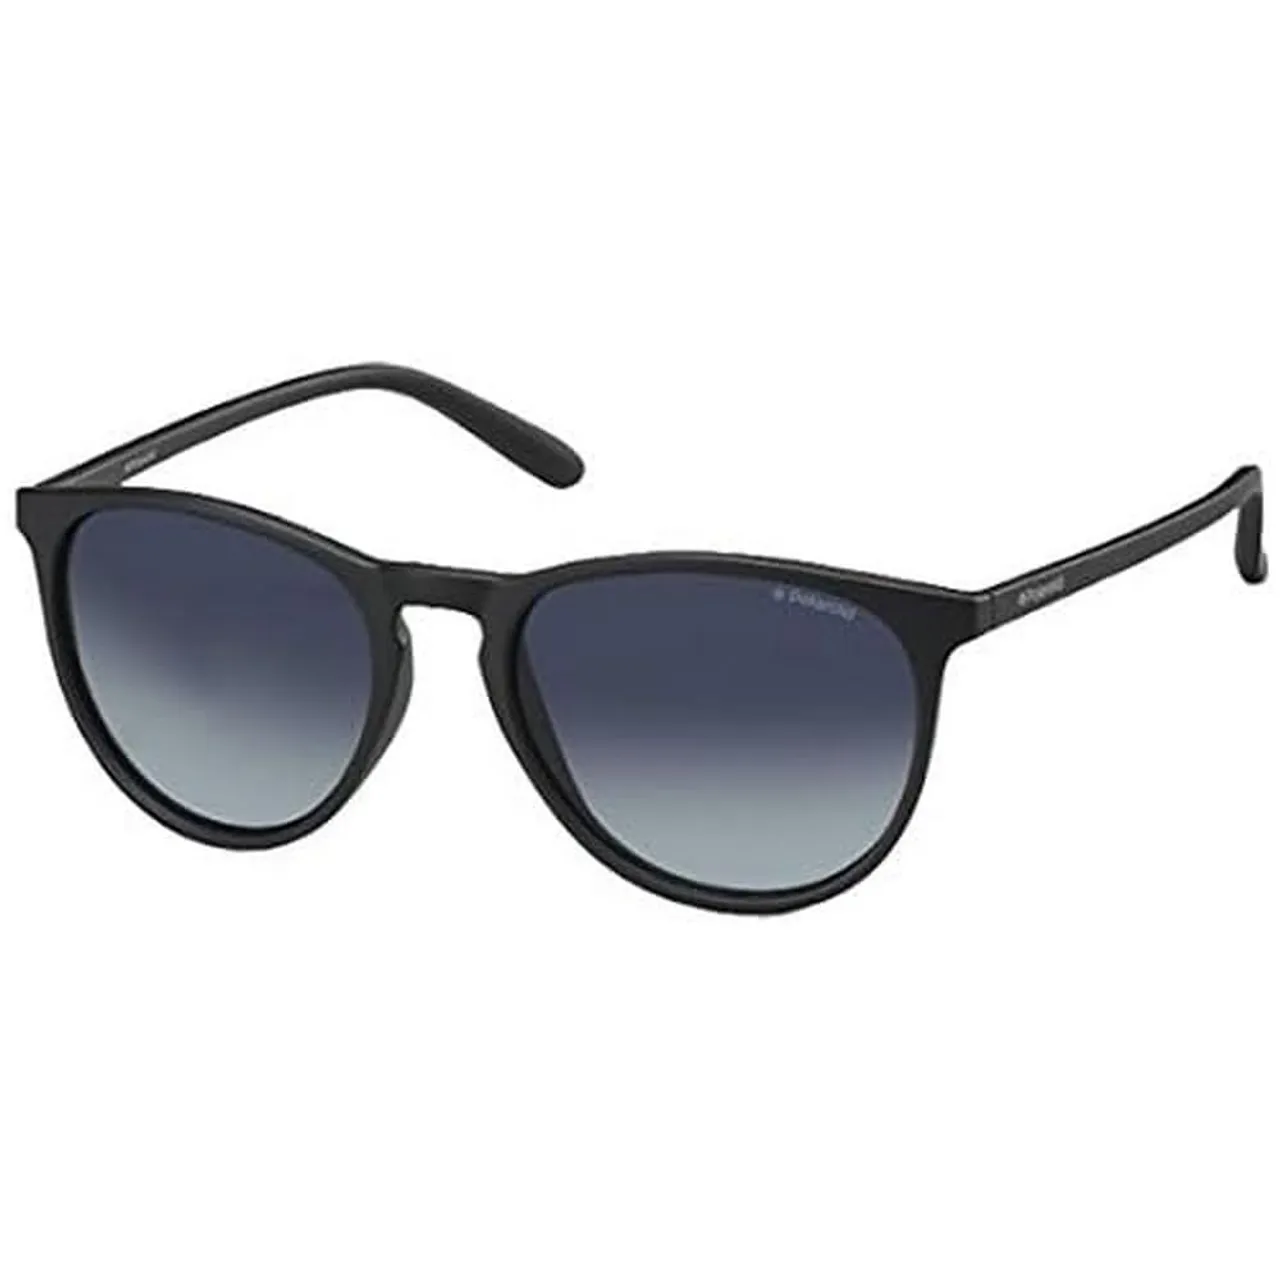 Polaroid PLD 6003/n/s Sunglasses